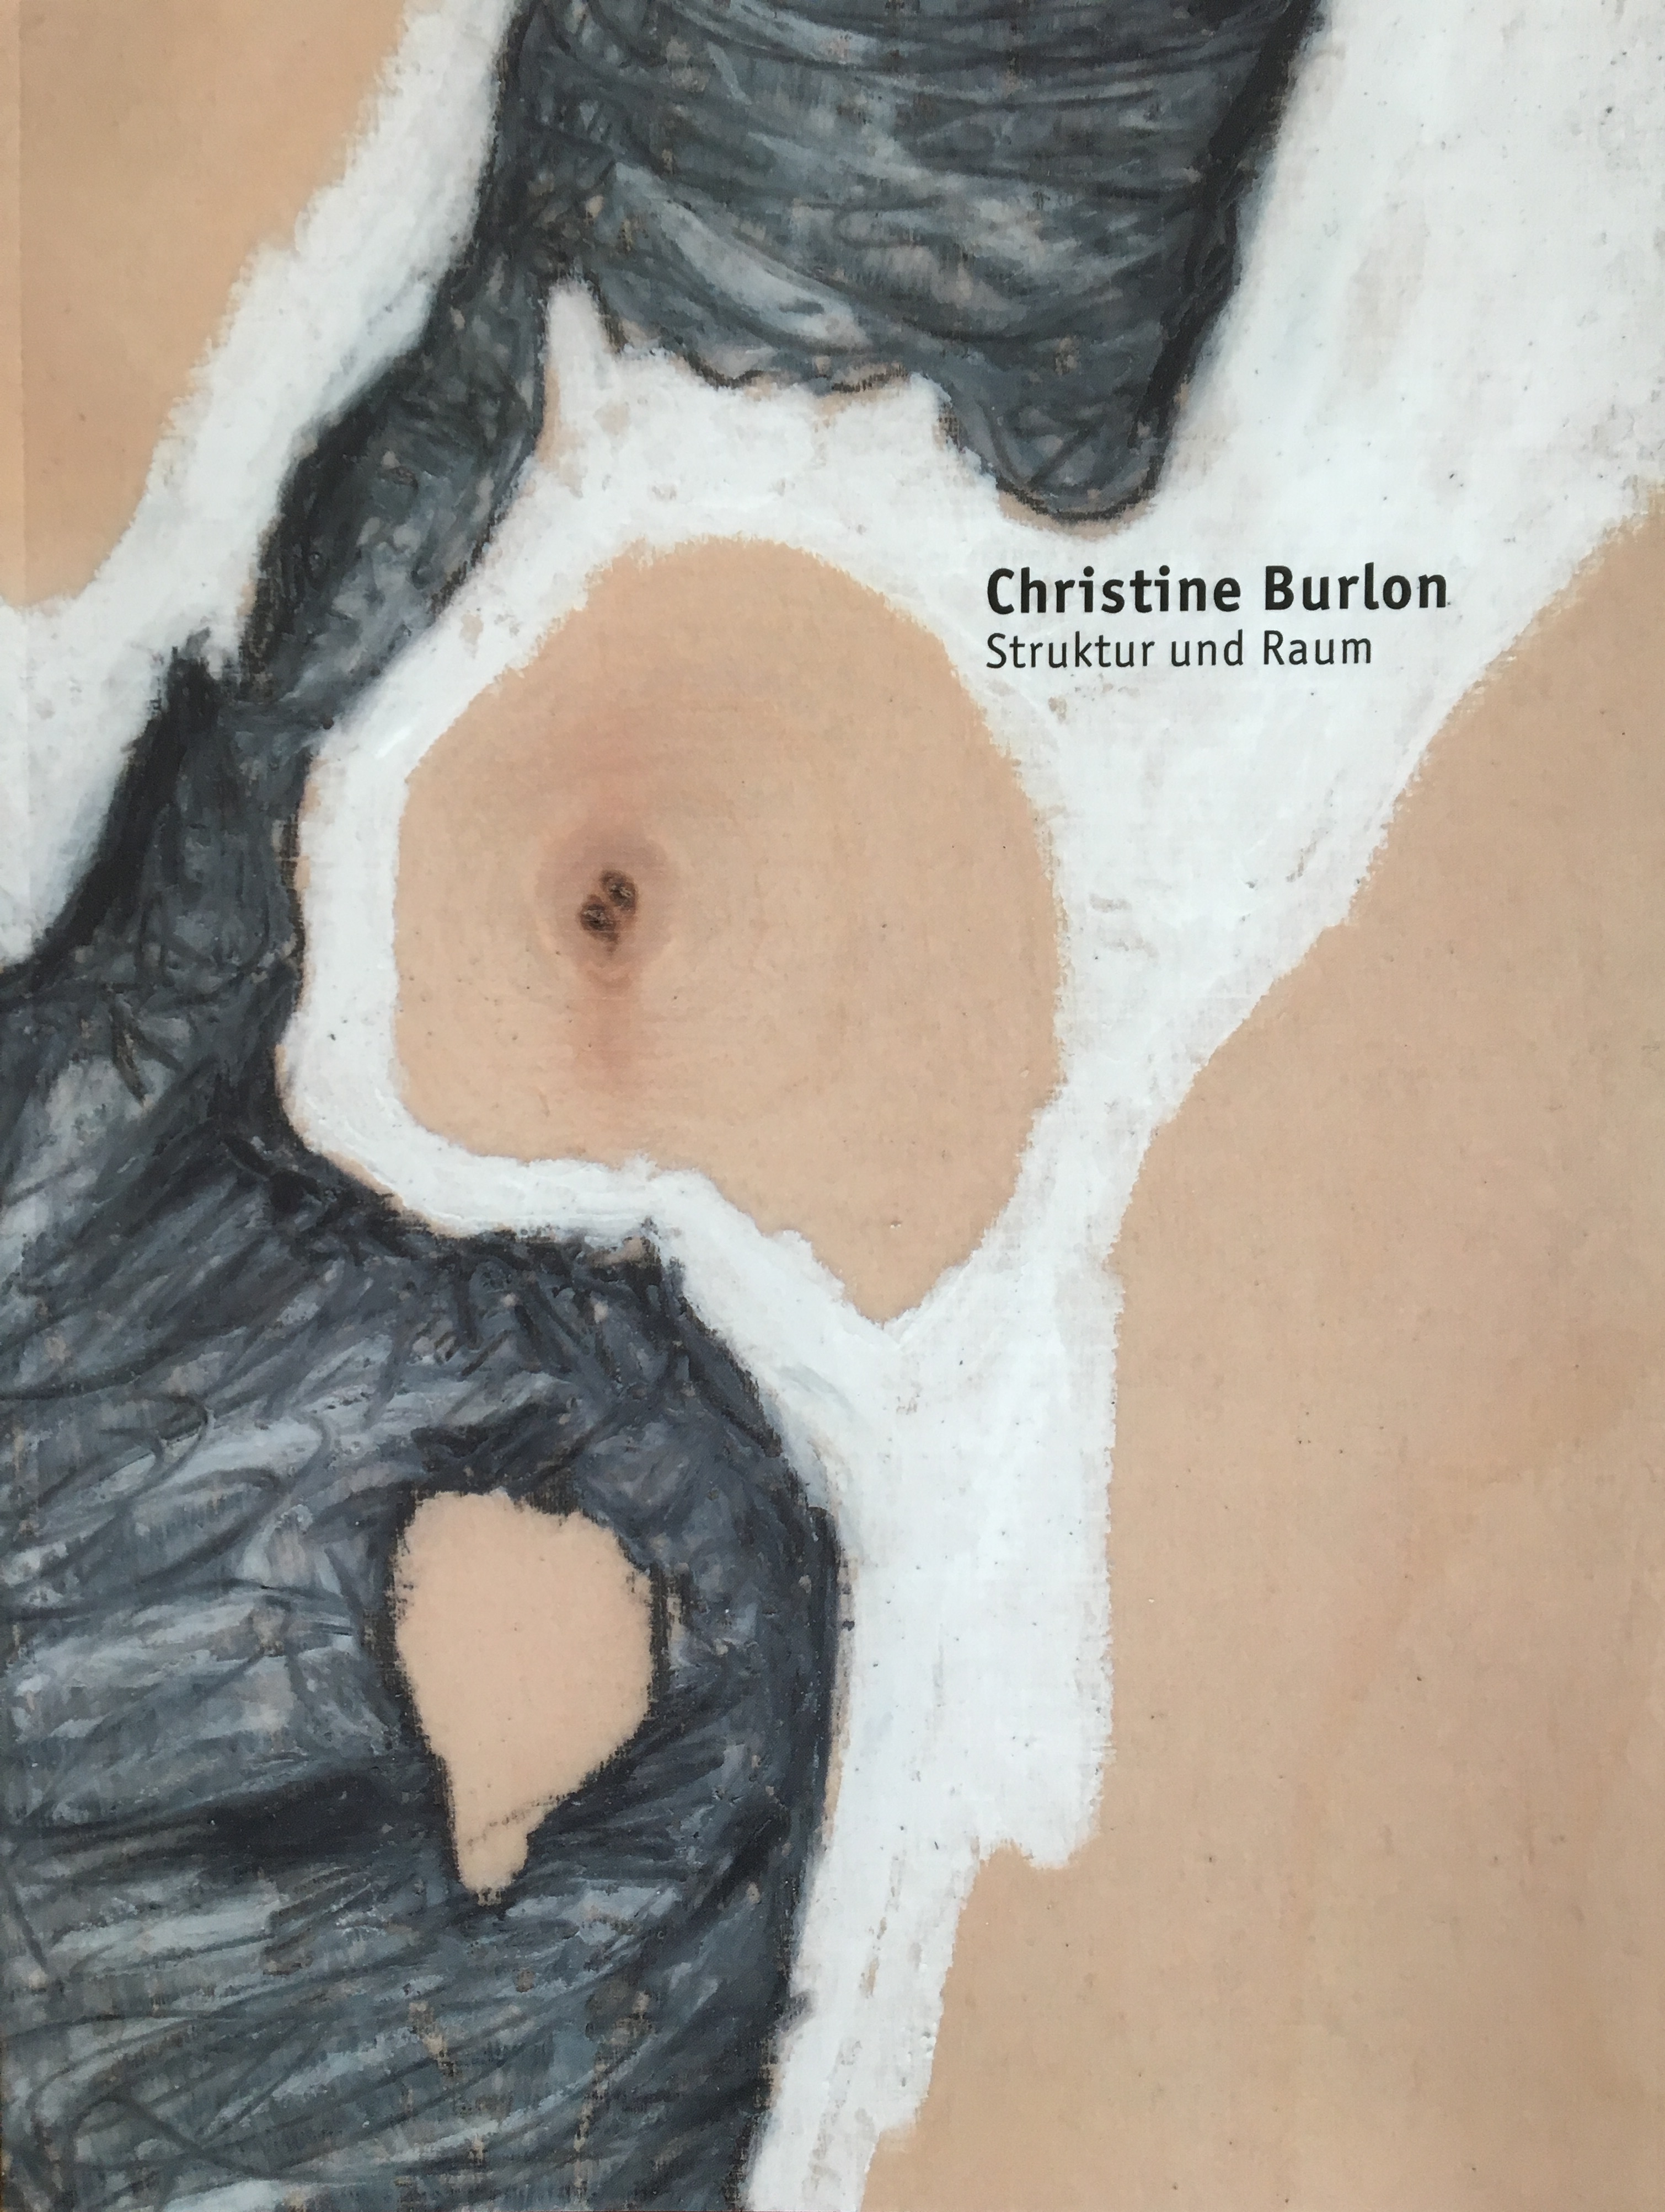 Christine Burlon. Struktur und Raum, Bild: 2017.